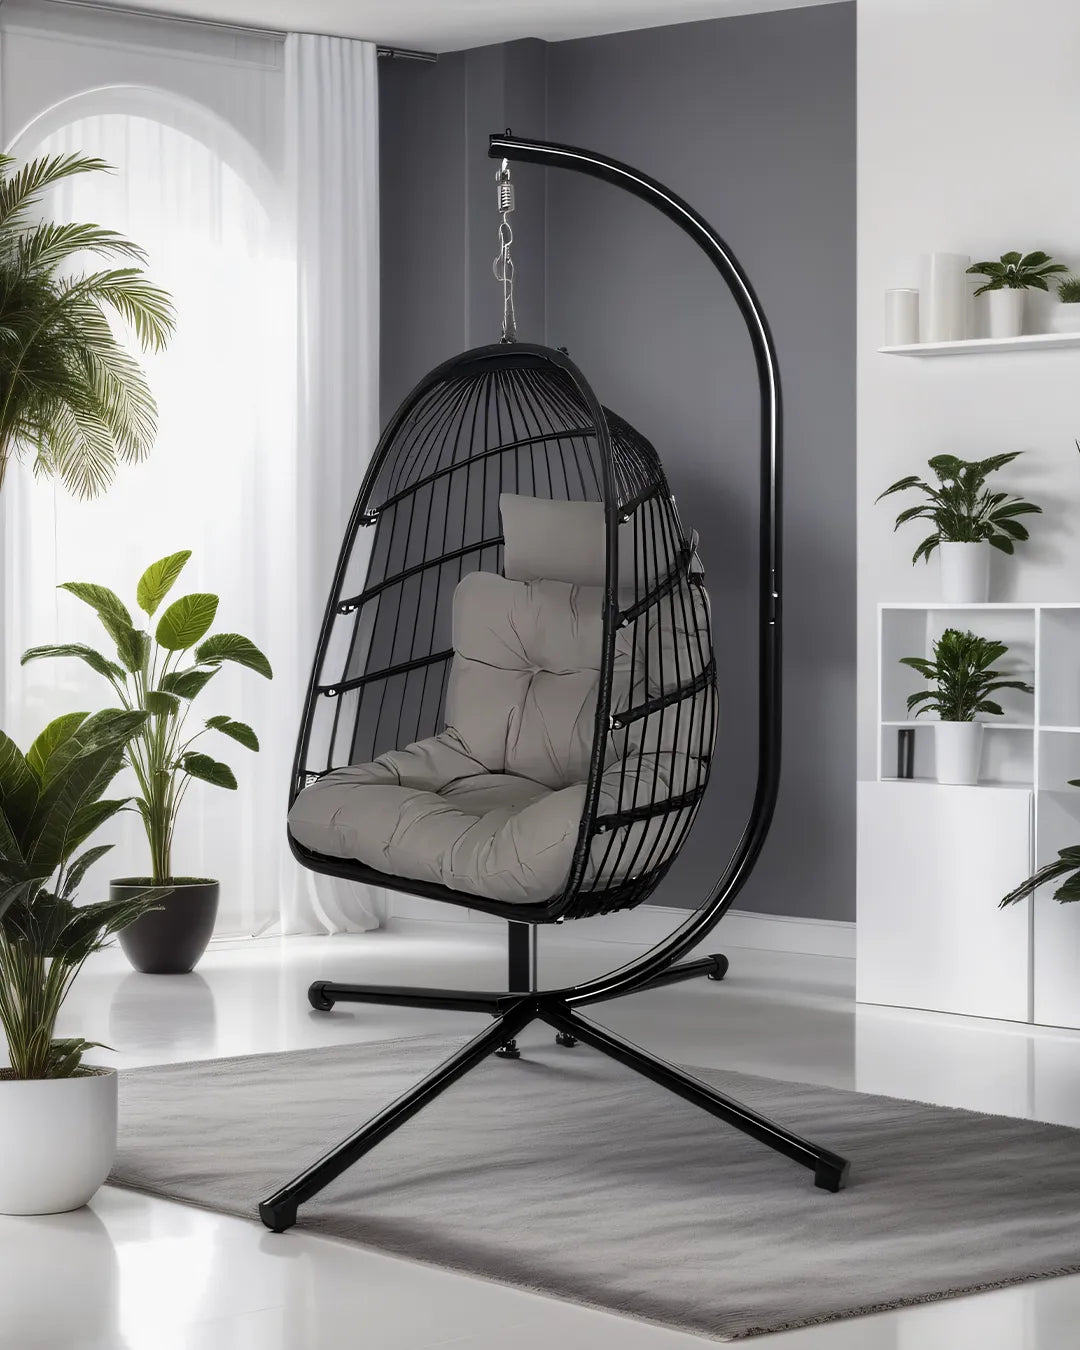 ZENIT - Hanging Chair